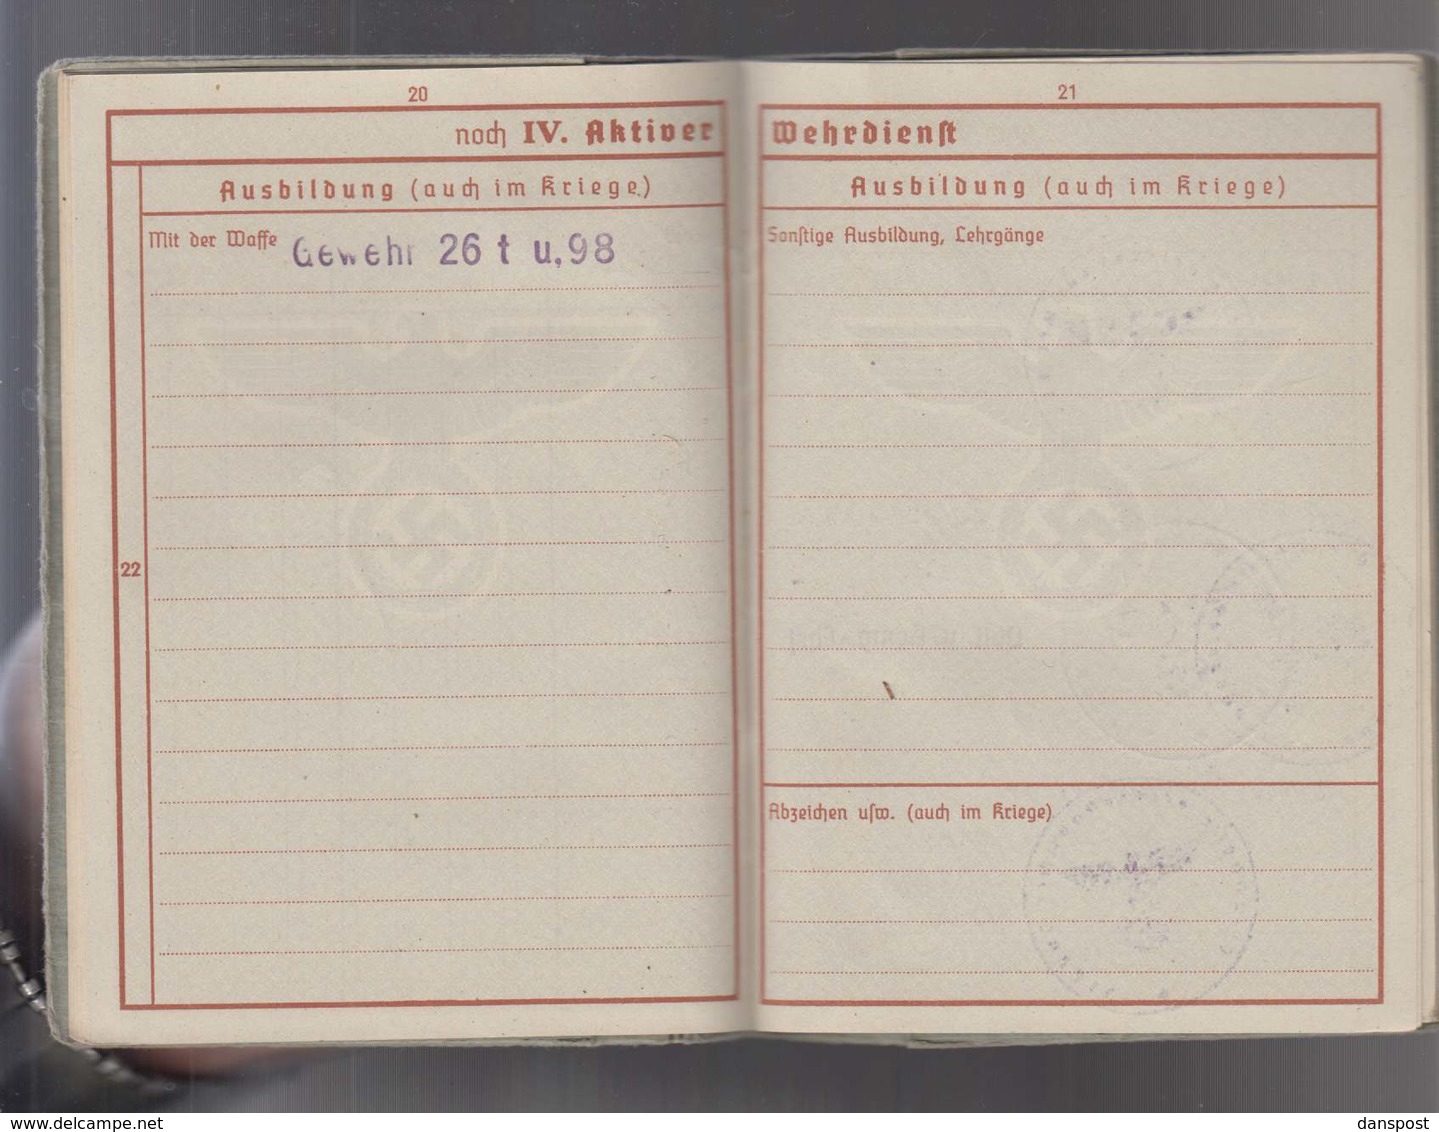 DR Wehrpass 2. WK Obergefreiter Kreta Malariakrank ausgestellt Frankfurt 16.04.1940 viele Einträge bis Okt 1944!